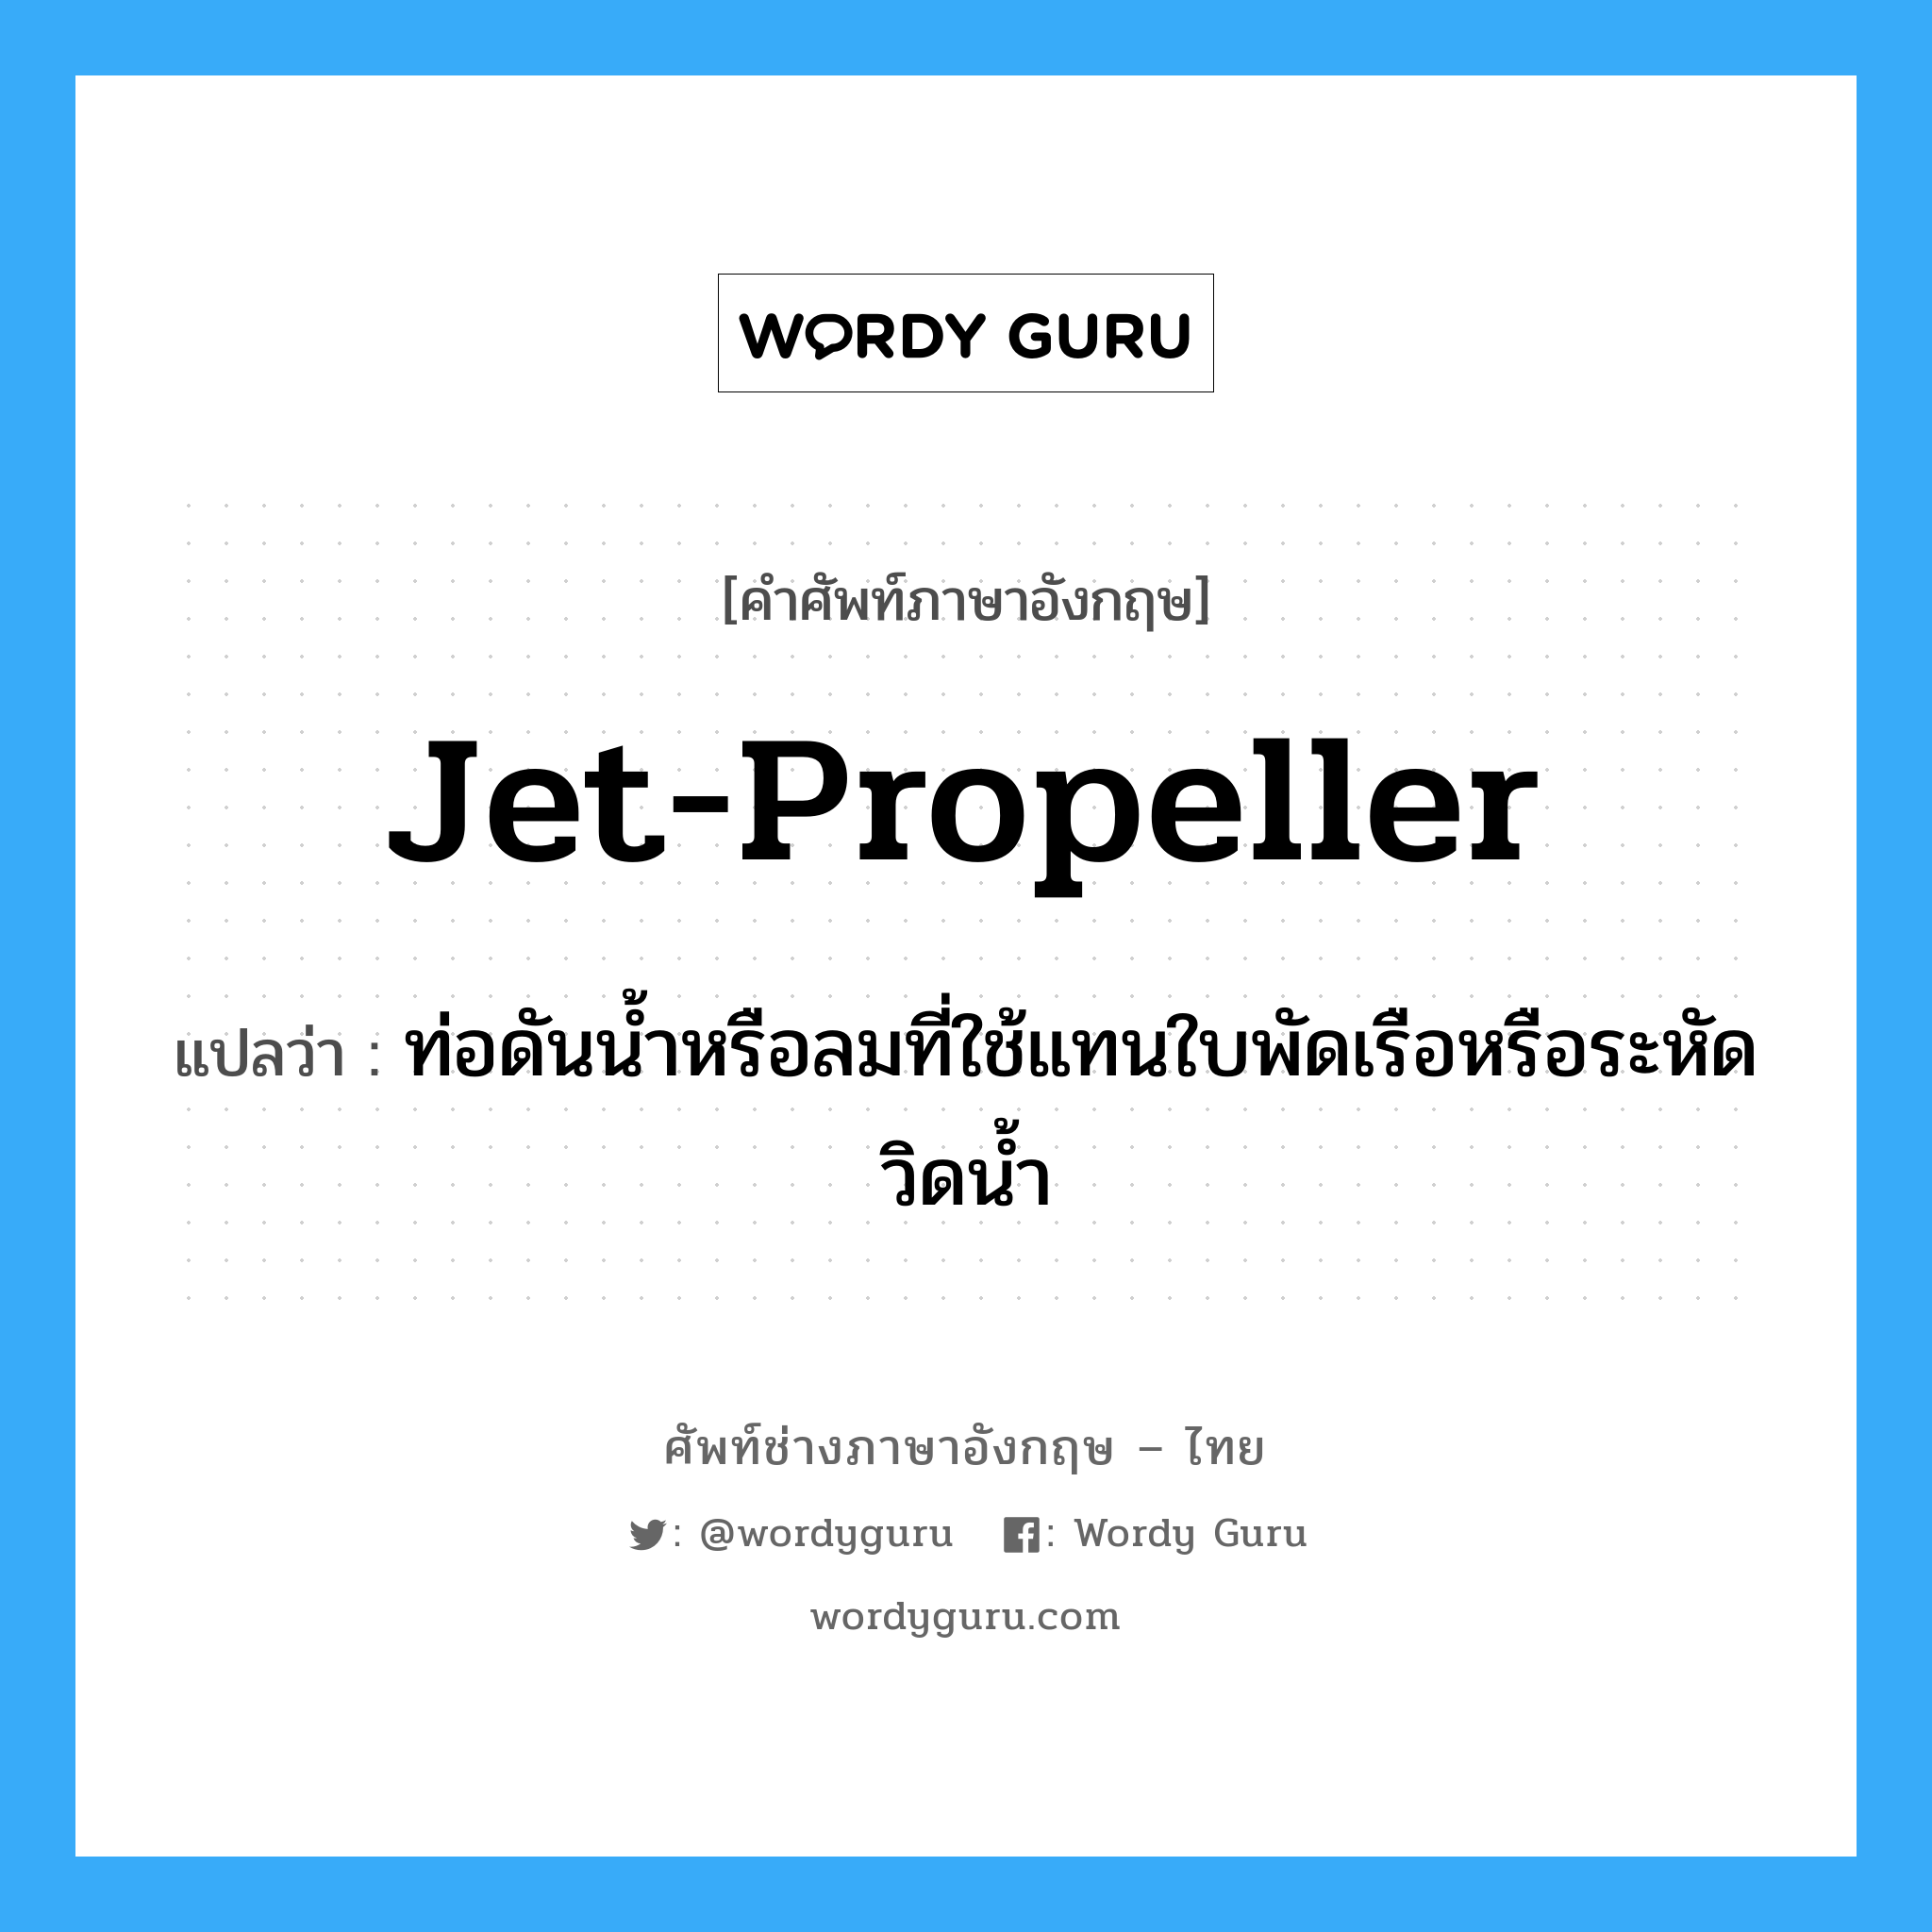 jet-propeller แปลว่า?, คำศัพท์ช่างภาษาอังกฤษ - ไทย jet-propeller คำศัพท์ภาษาอังกฤษ jet-propeller แปลว่า ท่อดันน้ำหรือลมที่ใช้แทนใบพัดเรือหรือระหัดวิดน้ำ